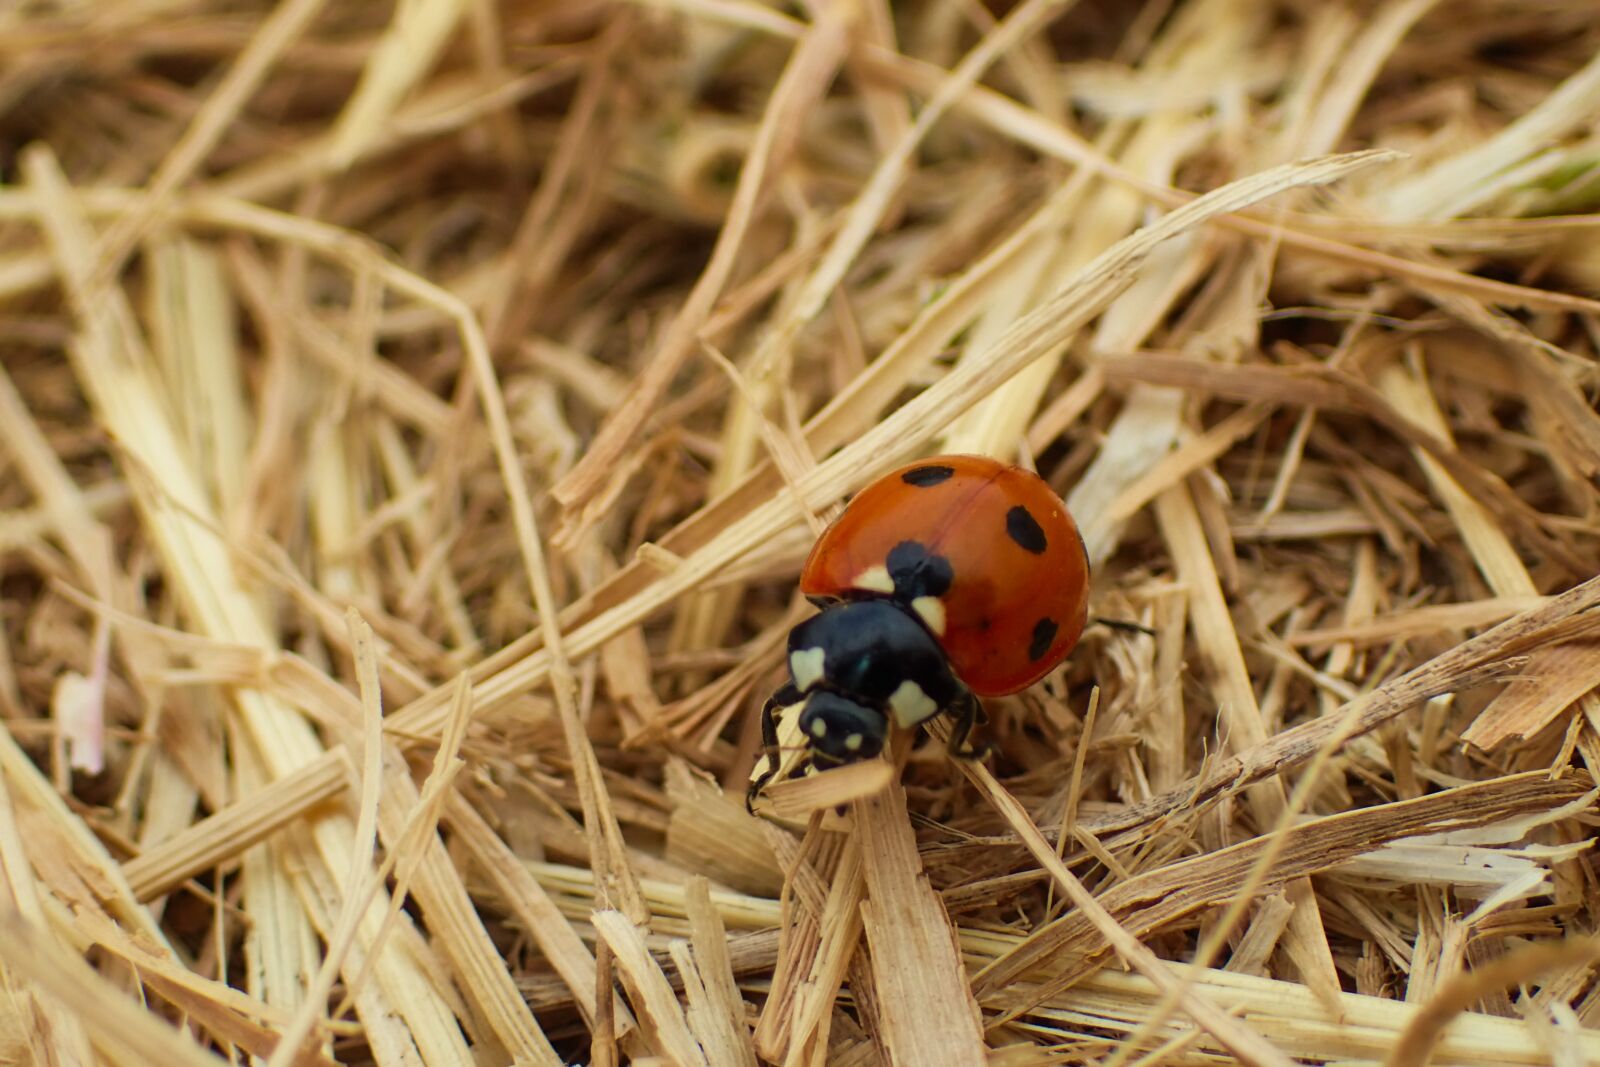 Olympus TG-4 sample photo. Ladybug, beautiful, beetle photography